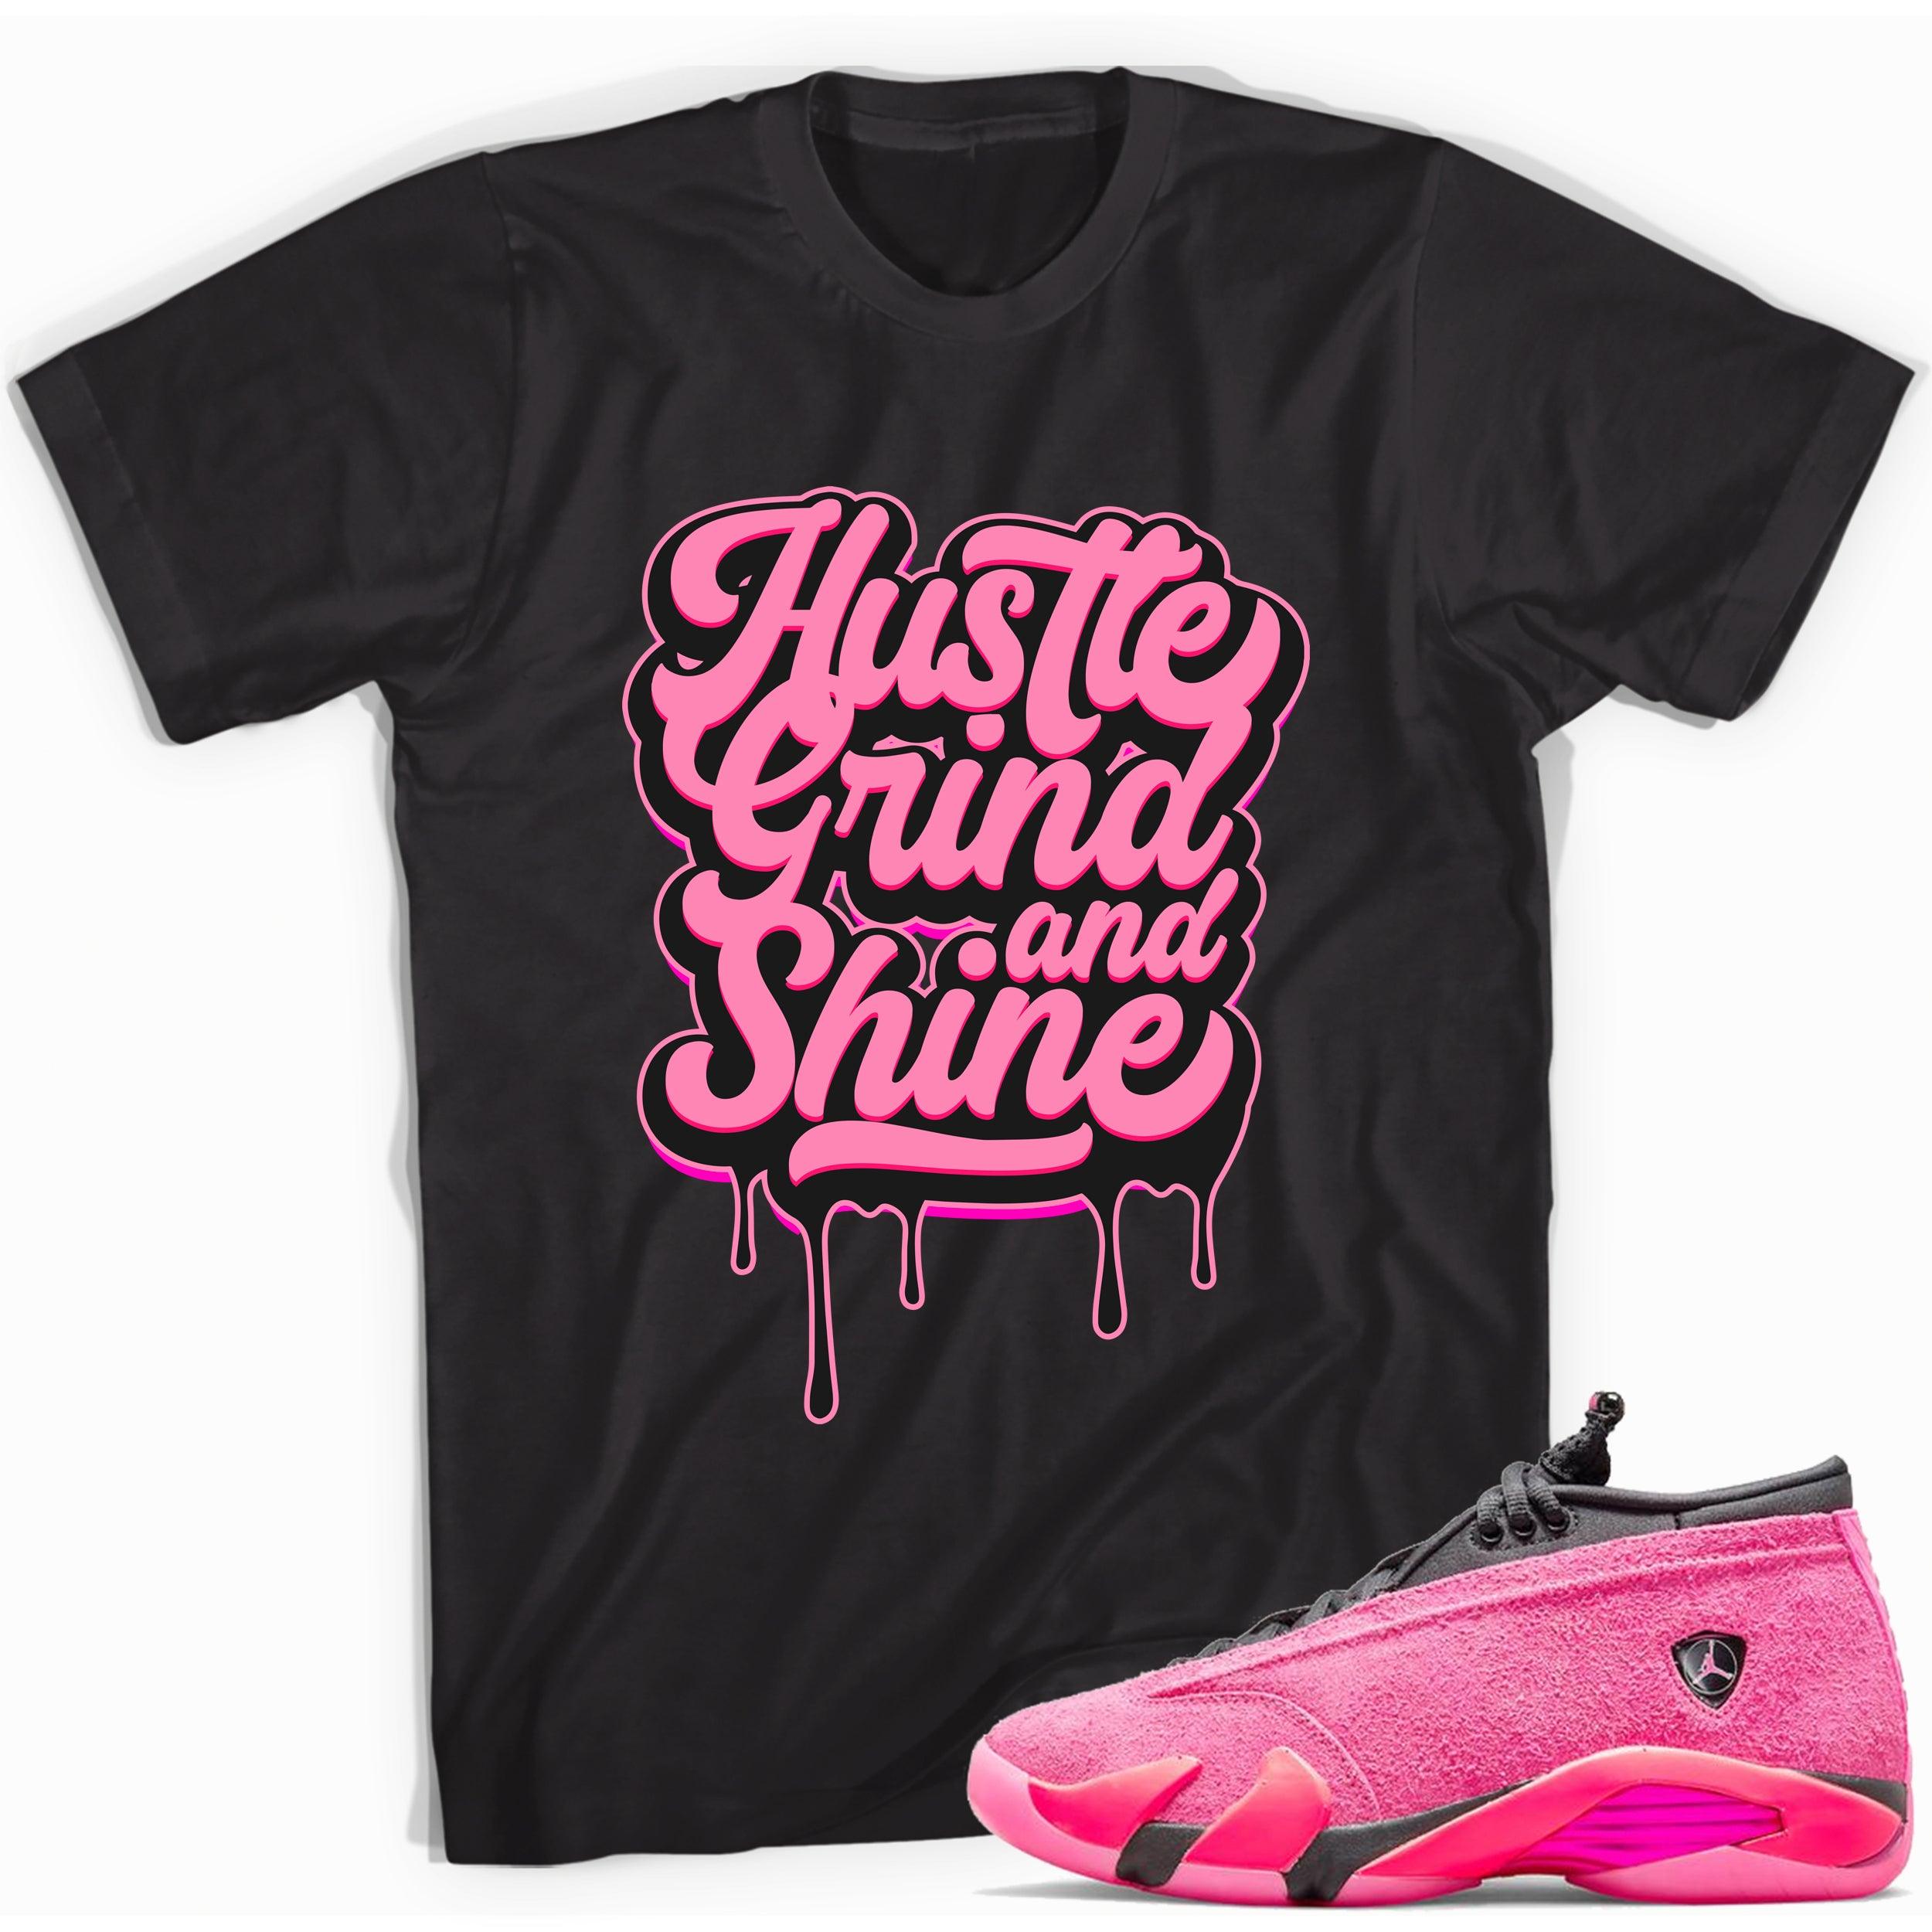 Black Hustle Grind Shine Shirt Jordan 14s Low Shocking Pink photo